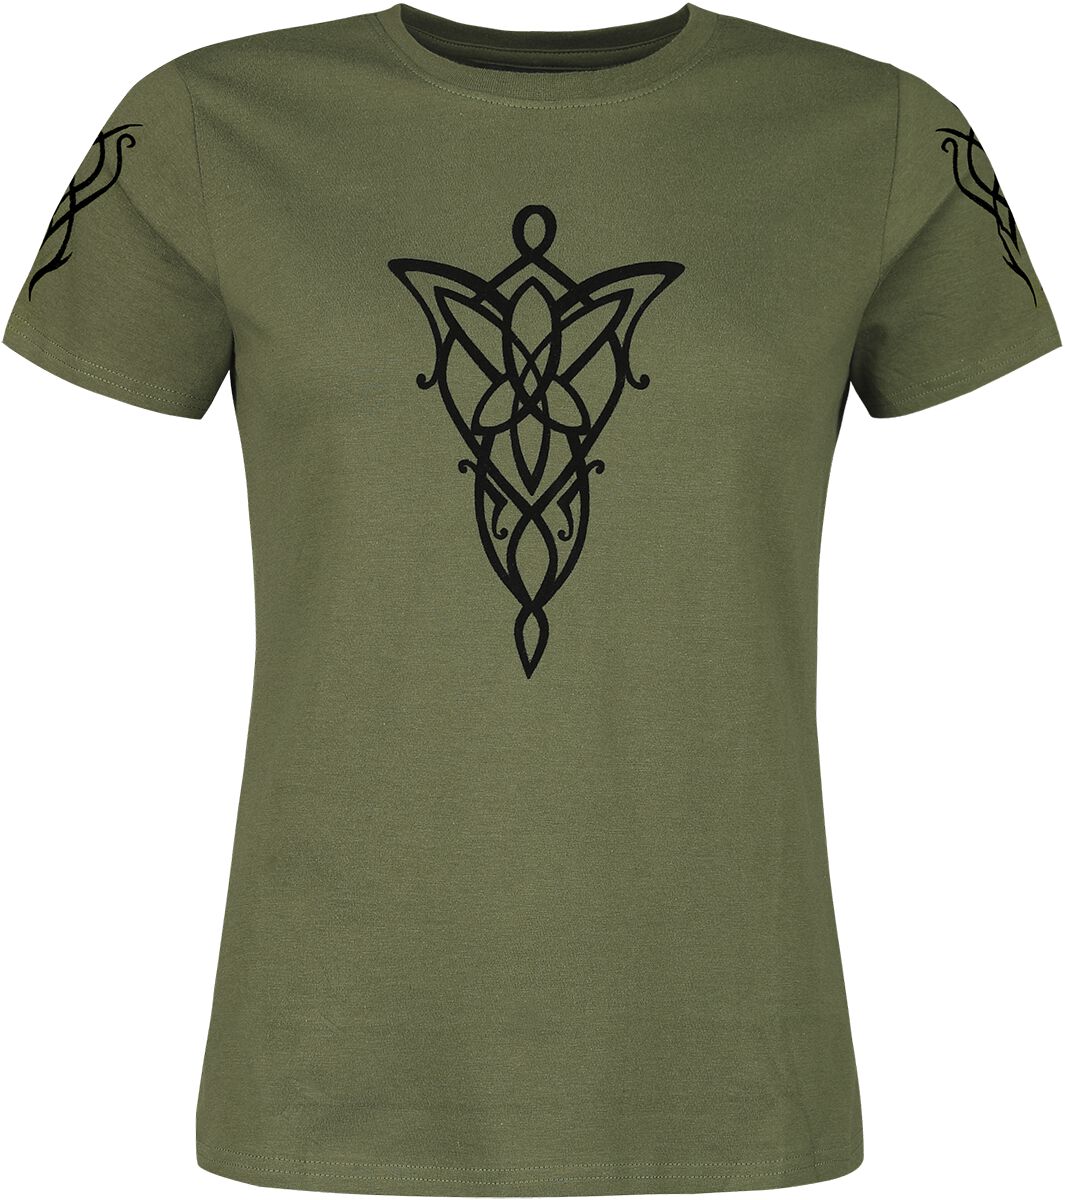 T-Shirt Manches courtes de Le Seigneur Des Anneaux - Evenstar - S à XXL - pour Femme - vert